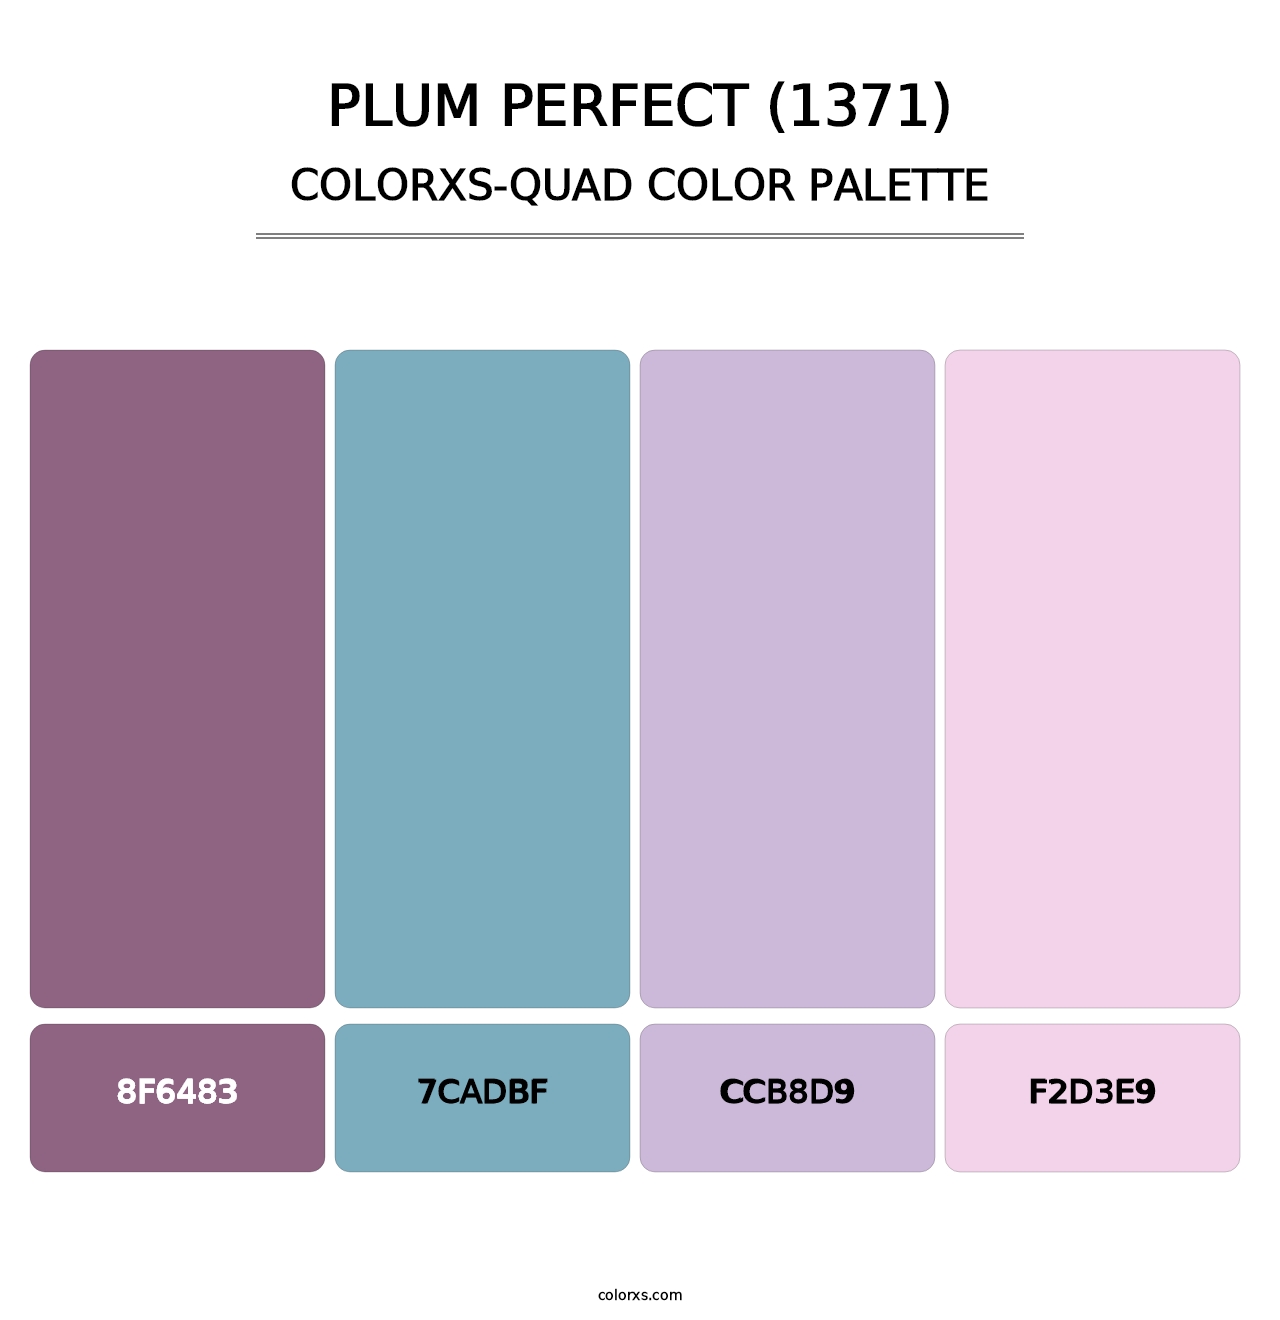 Plum Perfect (1371) - Colorxs Quad Palette